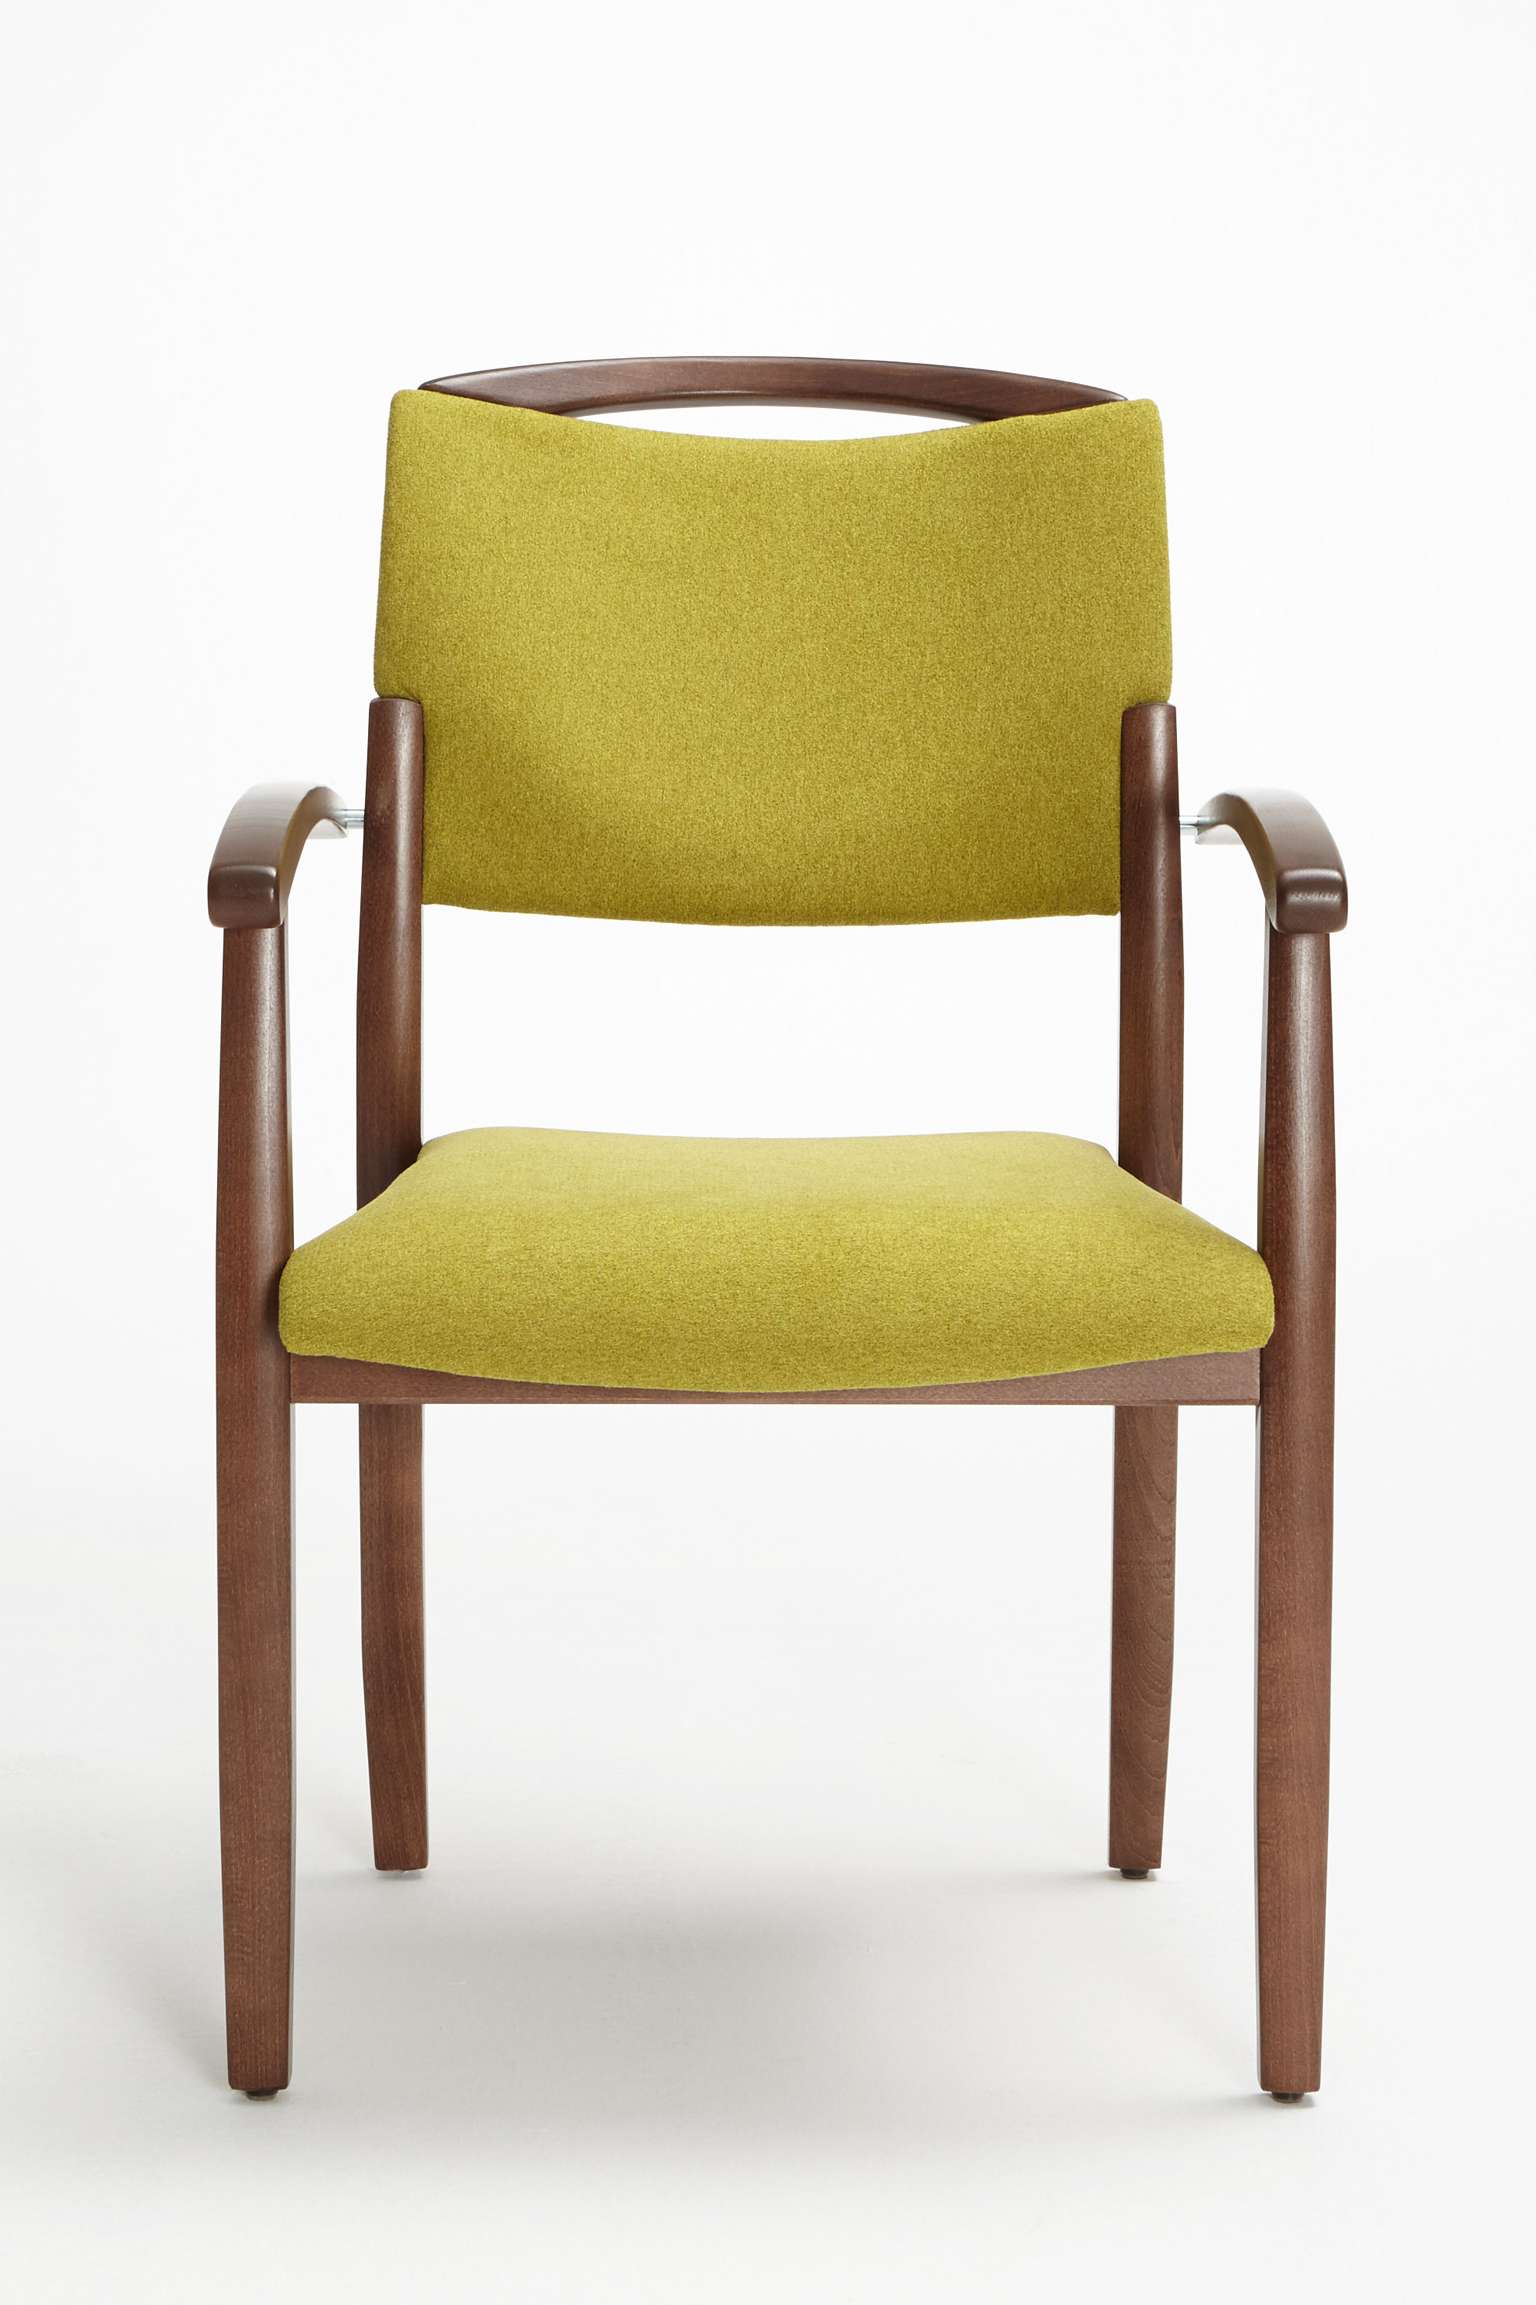 Fena-tuoli päällekkäin pinottavana, käsinojallisena ja nostokahvallisena mallina